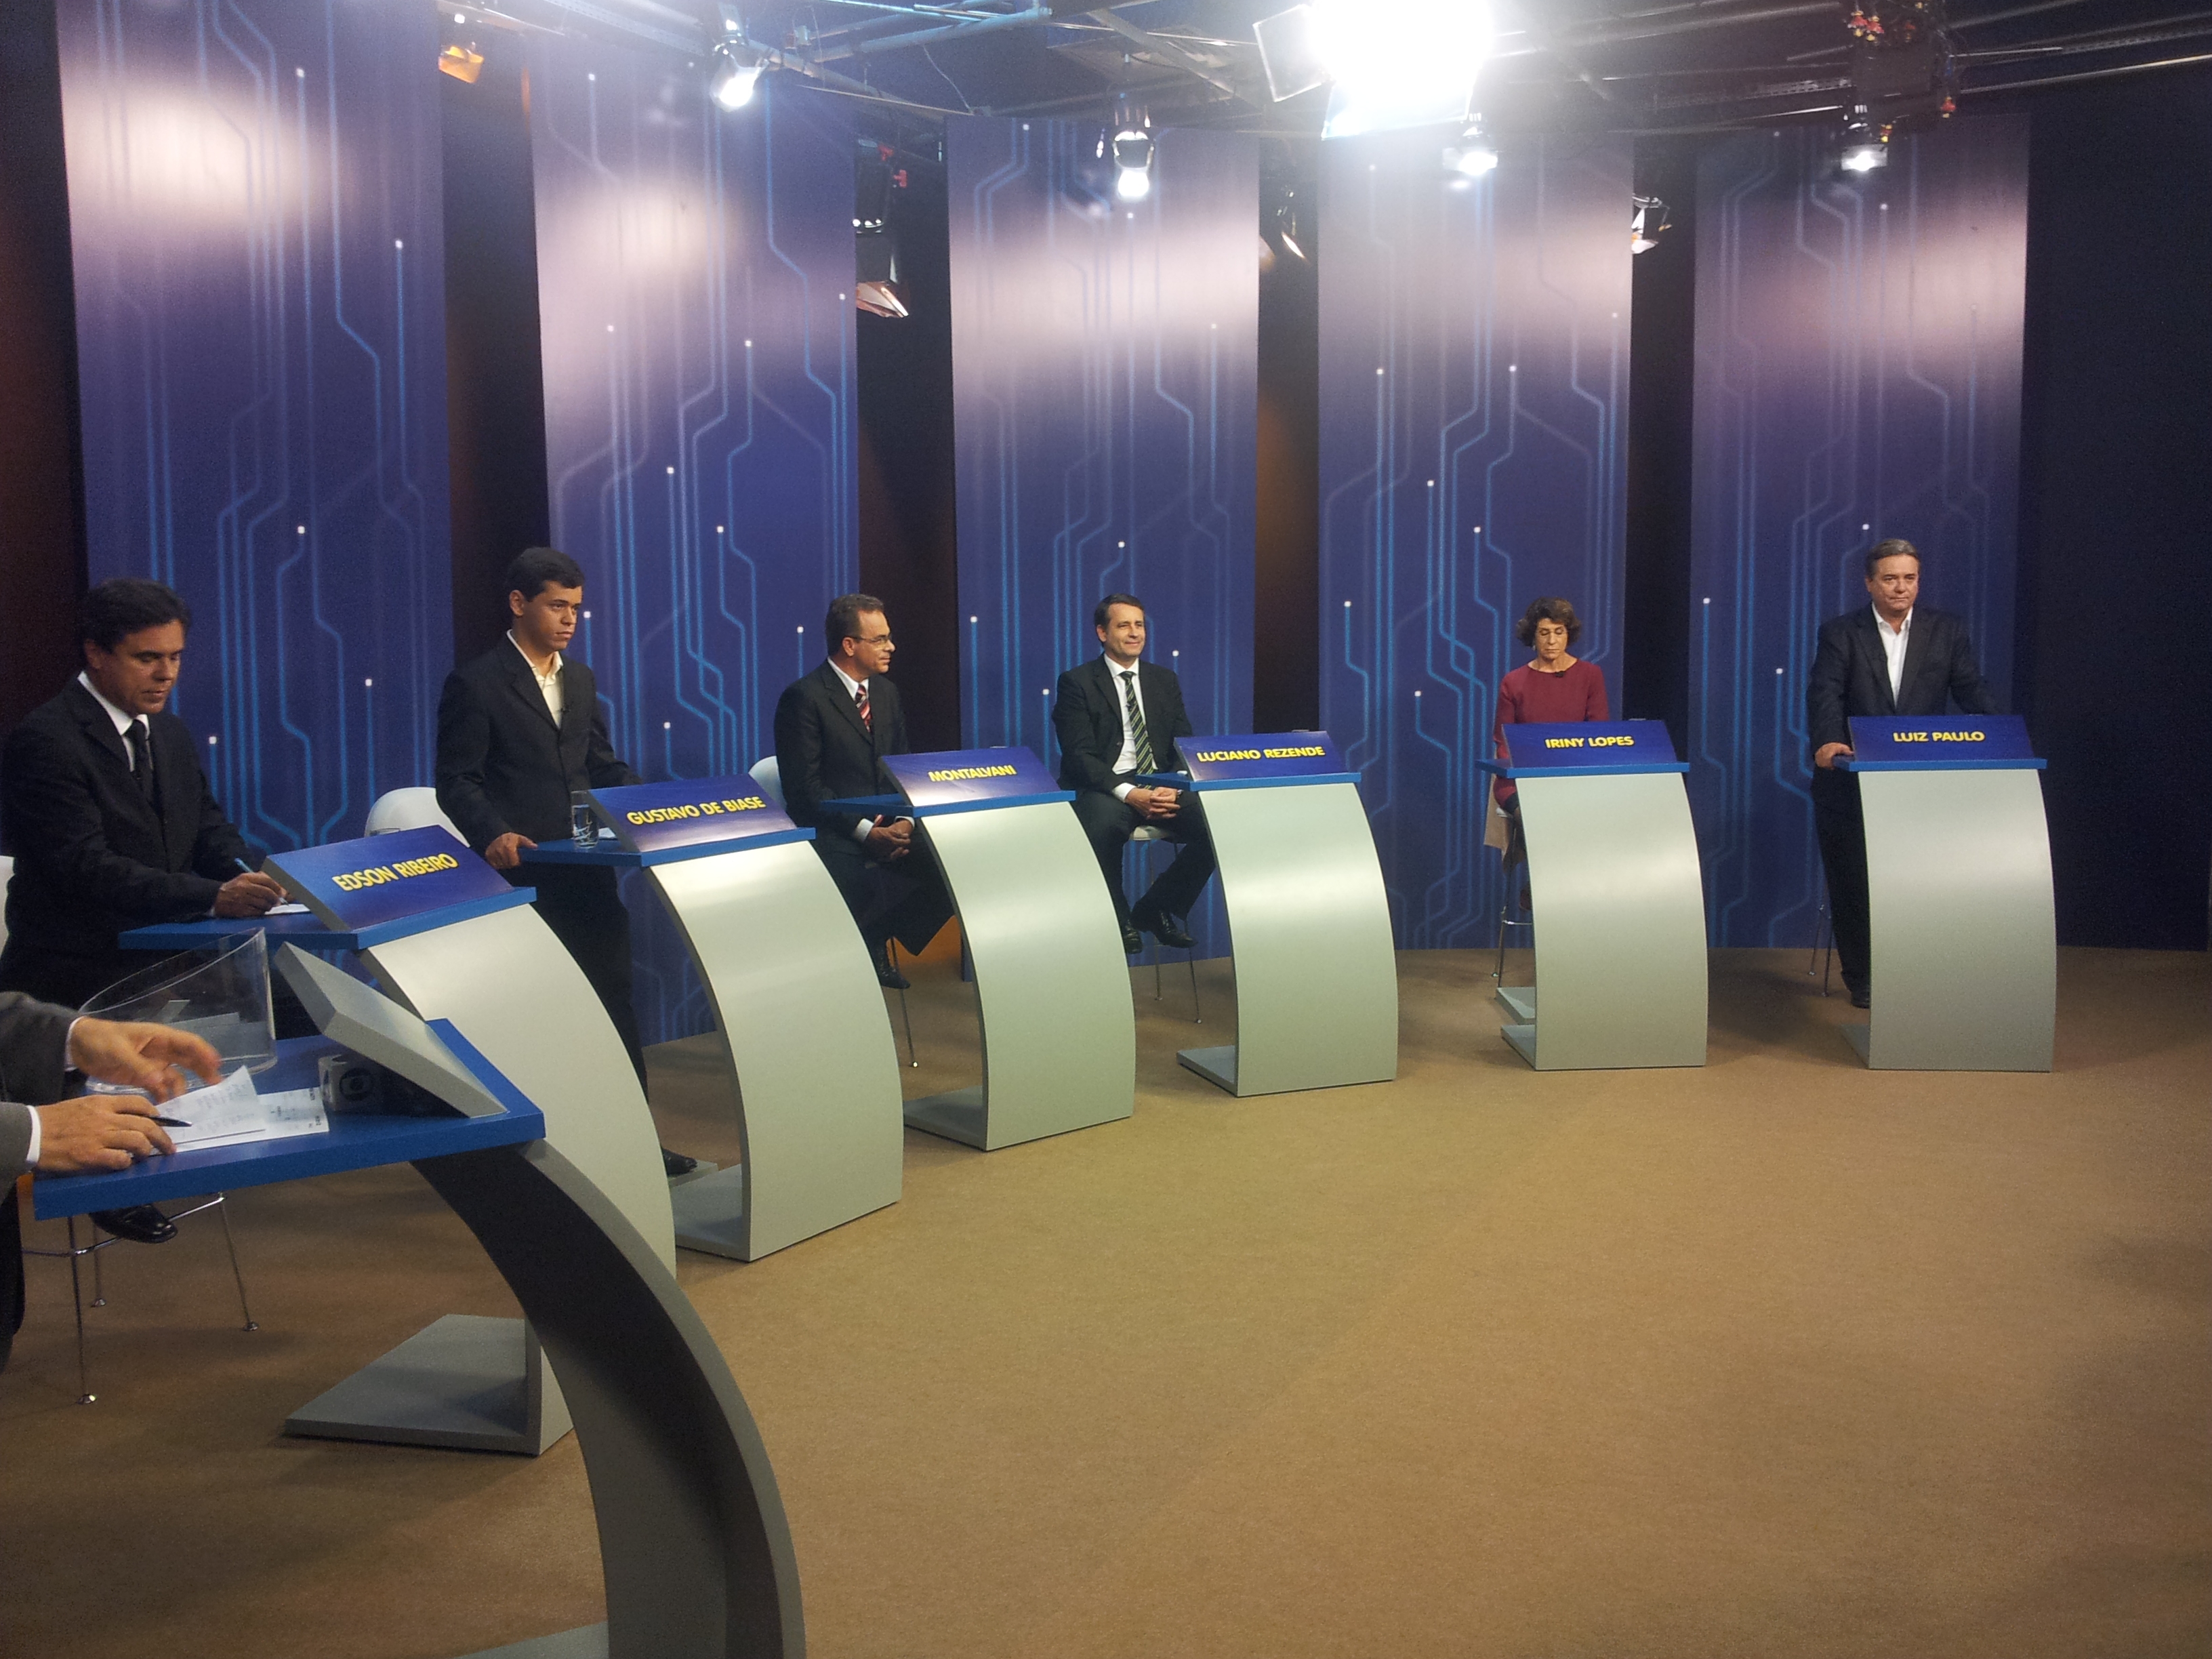 Candidatos preparados para o debate na TV Gazeta